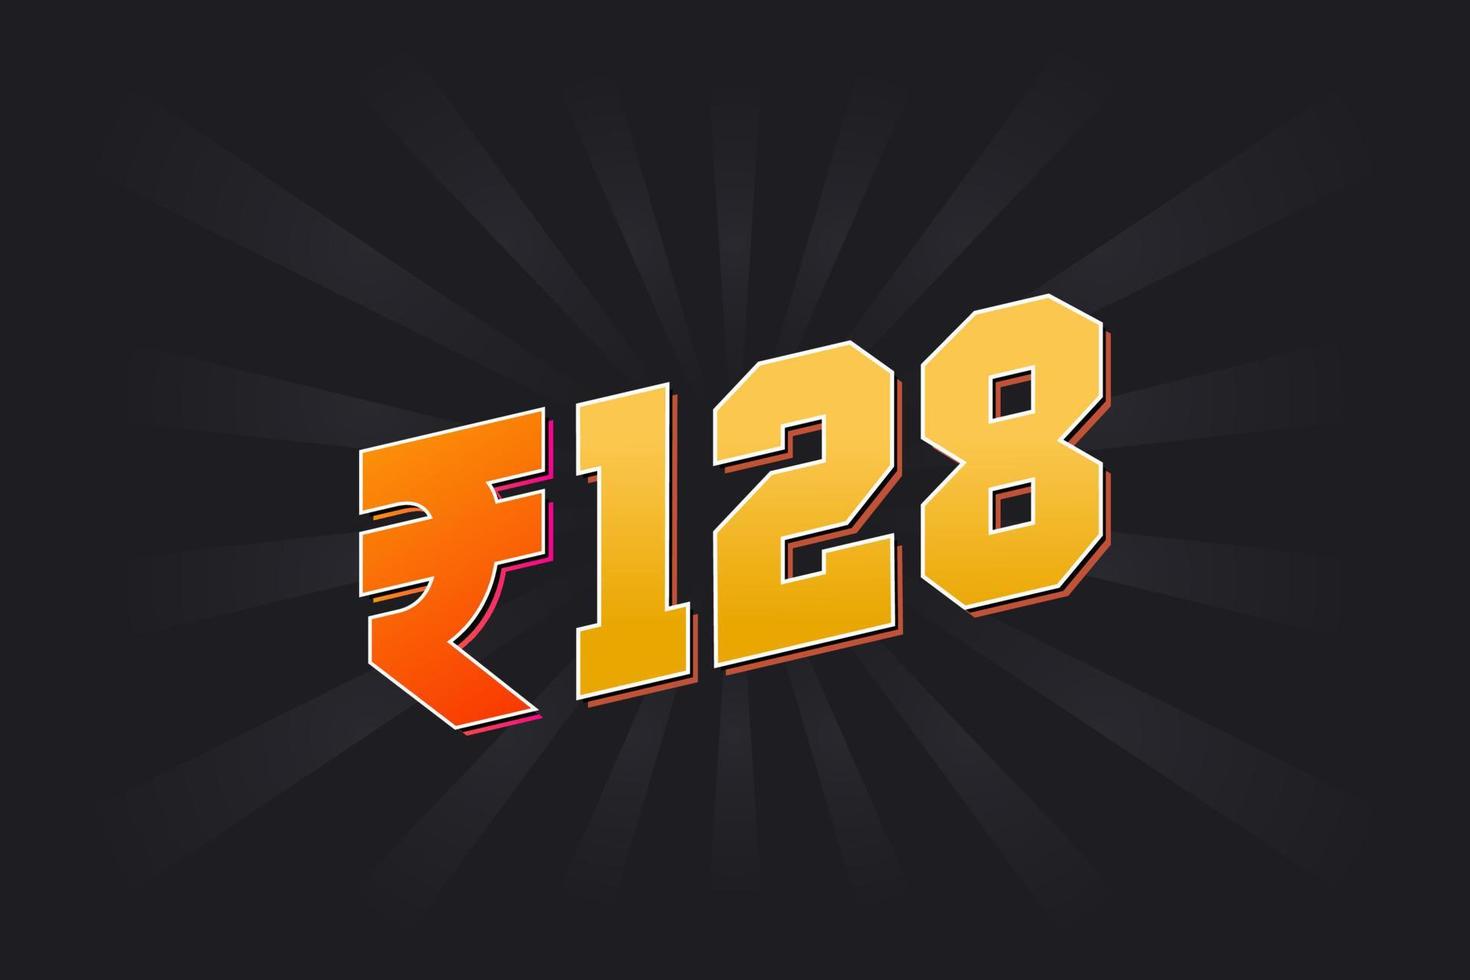 Image vectorielle de 128 roupies indiennes. 128 roupie symbole texte en gras illustration vectorielle vecteur